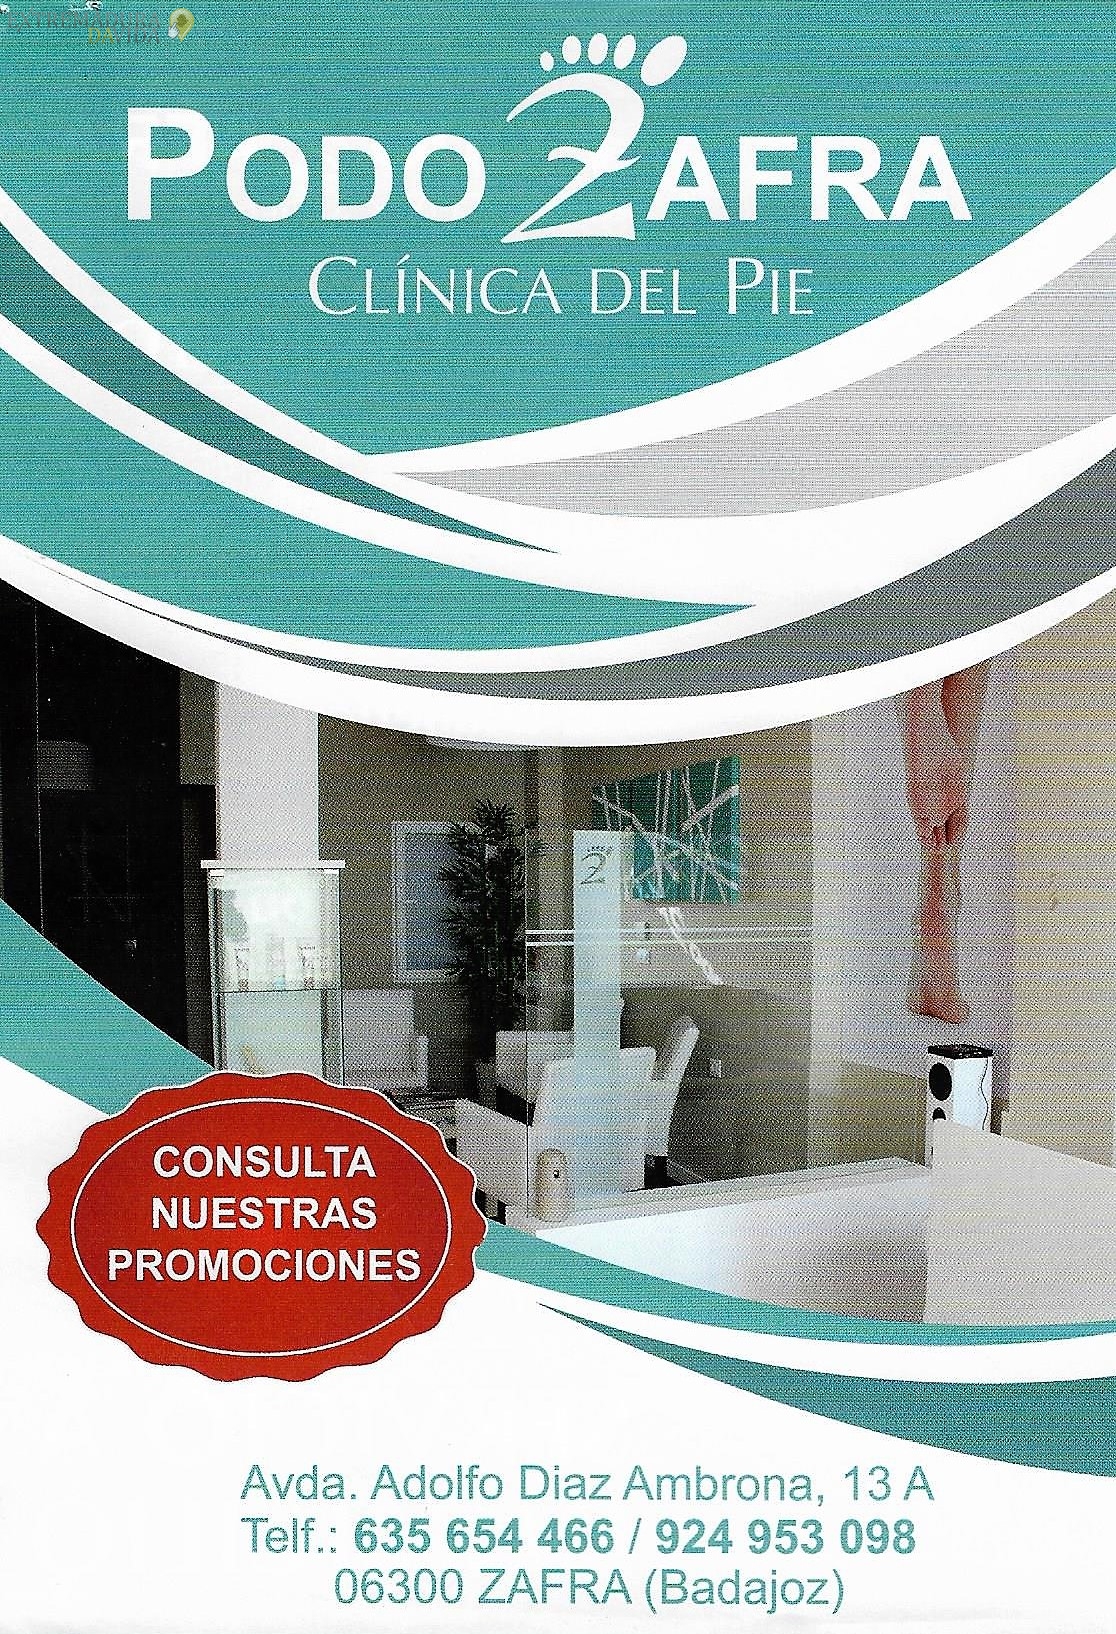 Podologia Zafra Clinica del Pie Podozafra